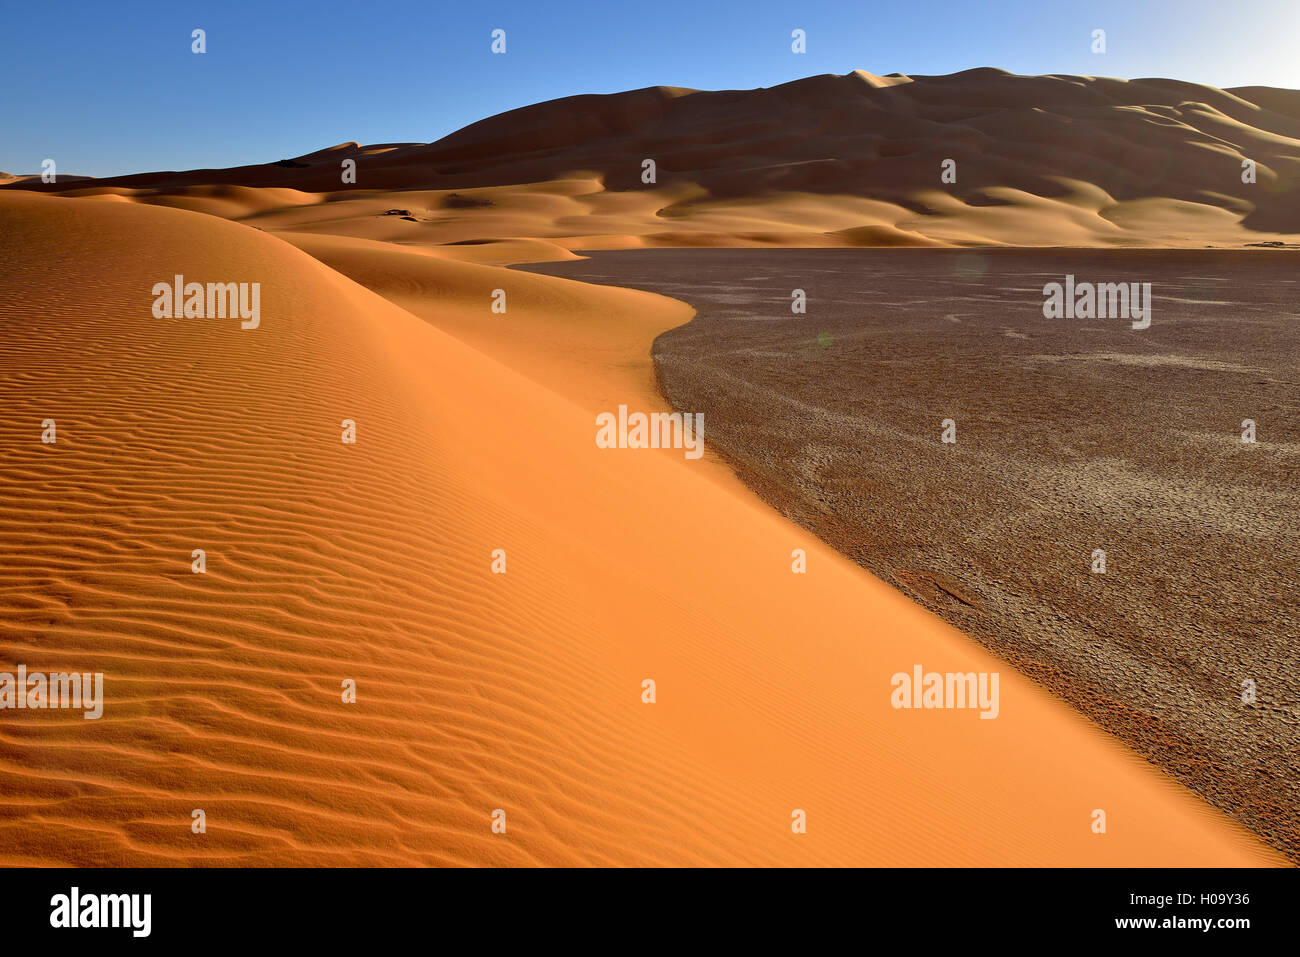 Sand dunes of In Djerane, Tadrart, Tassili n'Ajjer National Park, UNESCO World Heritage Site, Sahara desert, Algeria Stock Photo